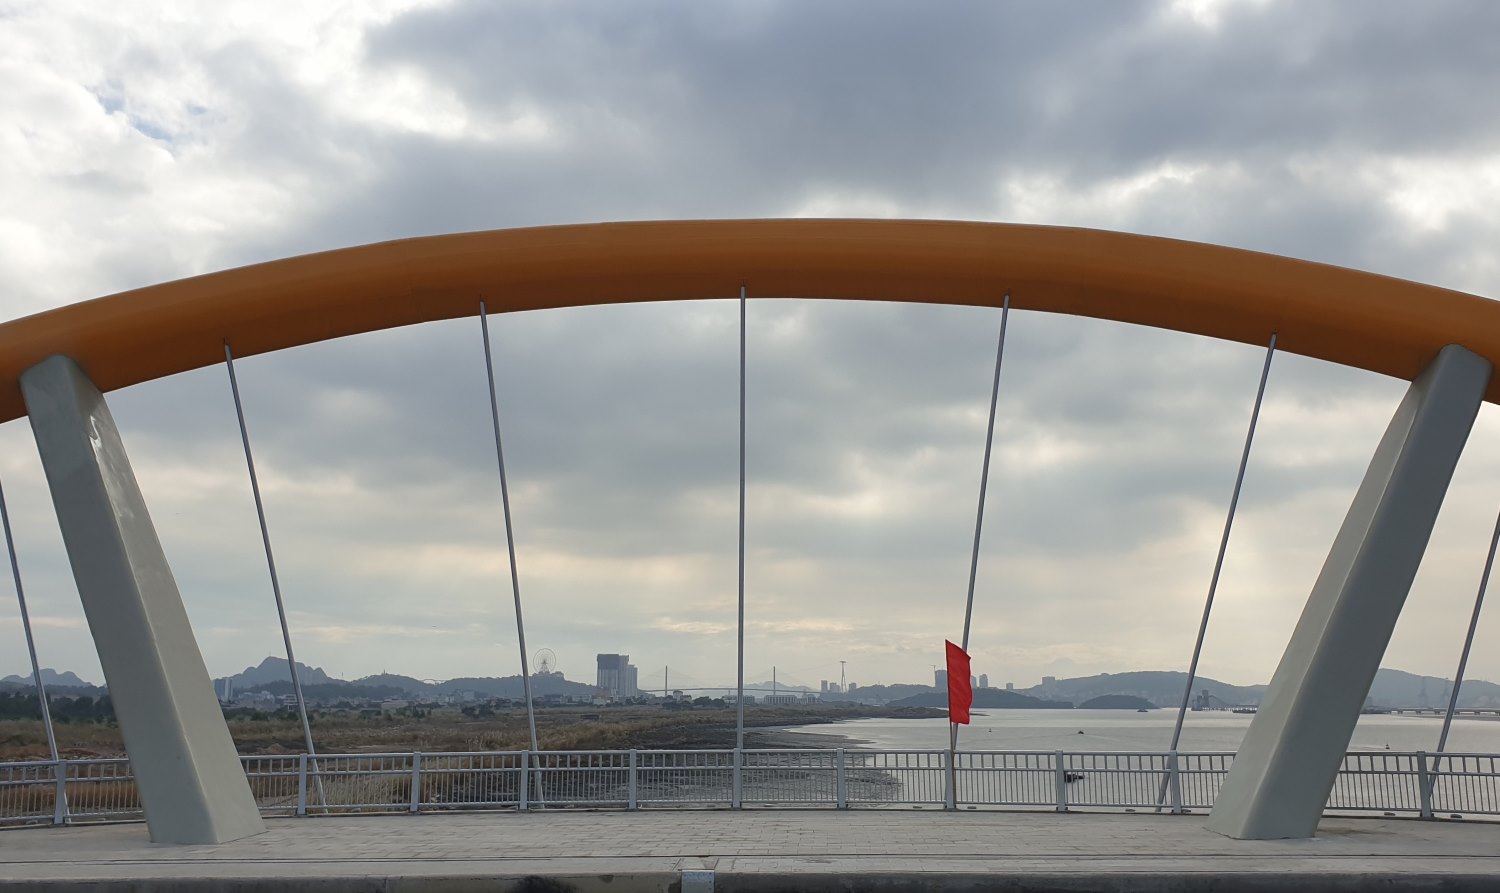 Cũng như cầu Cửa Lục 1 (cầu Tình Yêu), cầu Cửa Lục 3 không chỉ góp phần kết nối giao thông giữa đôi bờ vịnh Cửa Lục, mà còn là công trình kiến trúc đẹp, lại nằm giữa một không gian đầy sức quyến rũ. Ảnh: Nguyễn Hùng